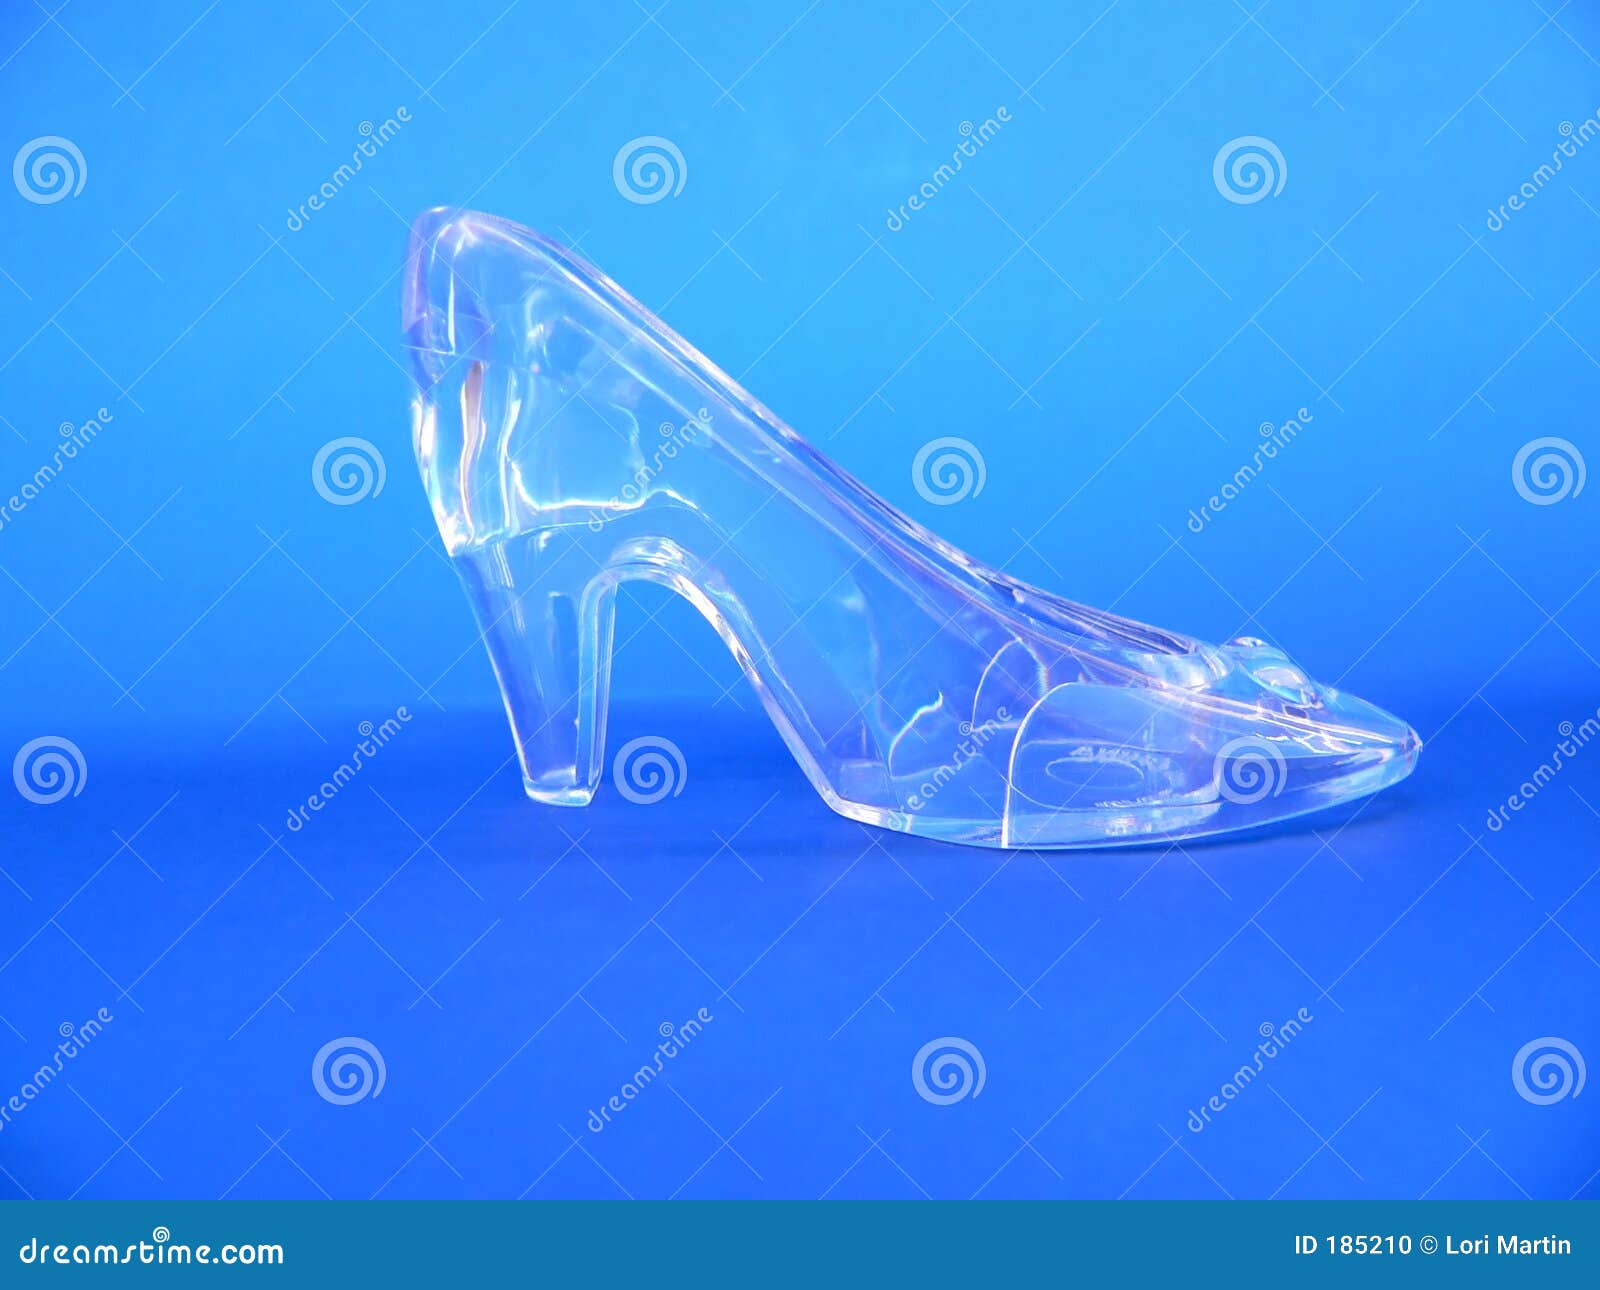 glass slipper clip art - photo #44